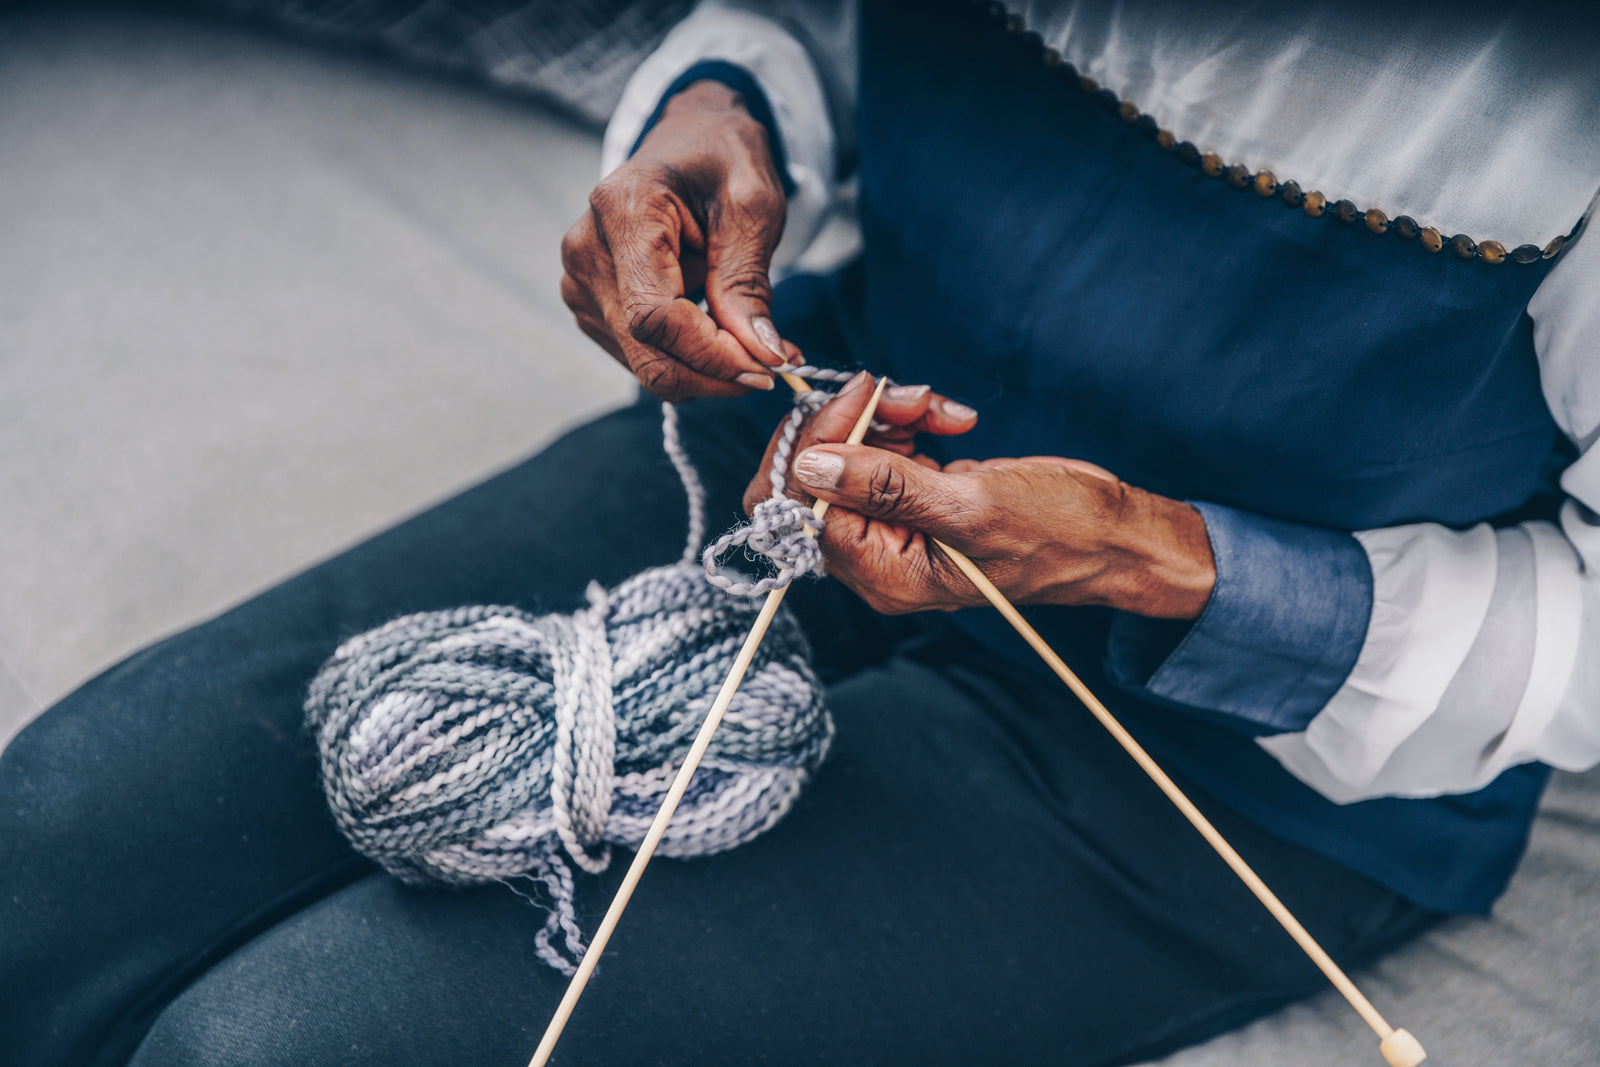 Senior citizen knitting